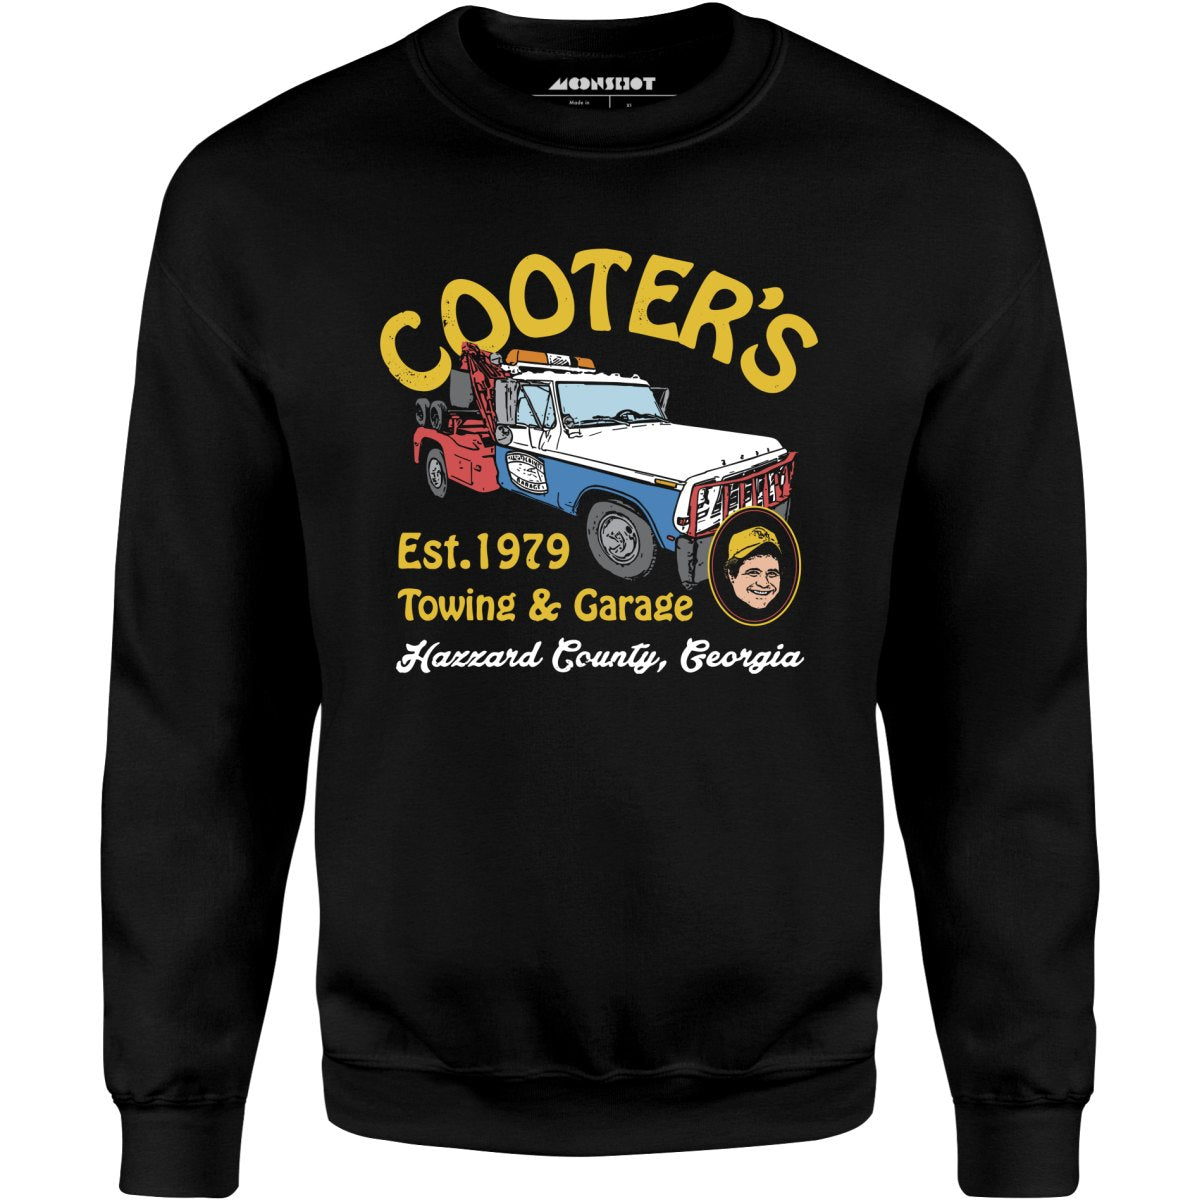 Cooter's Towing & Garage - Unisex Sweatshirt